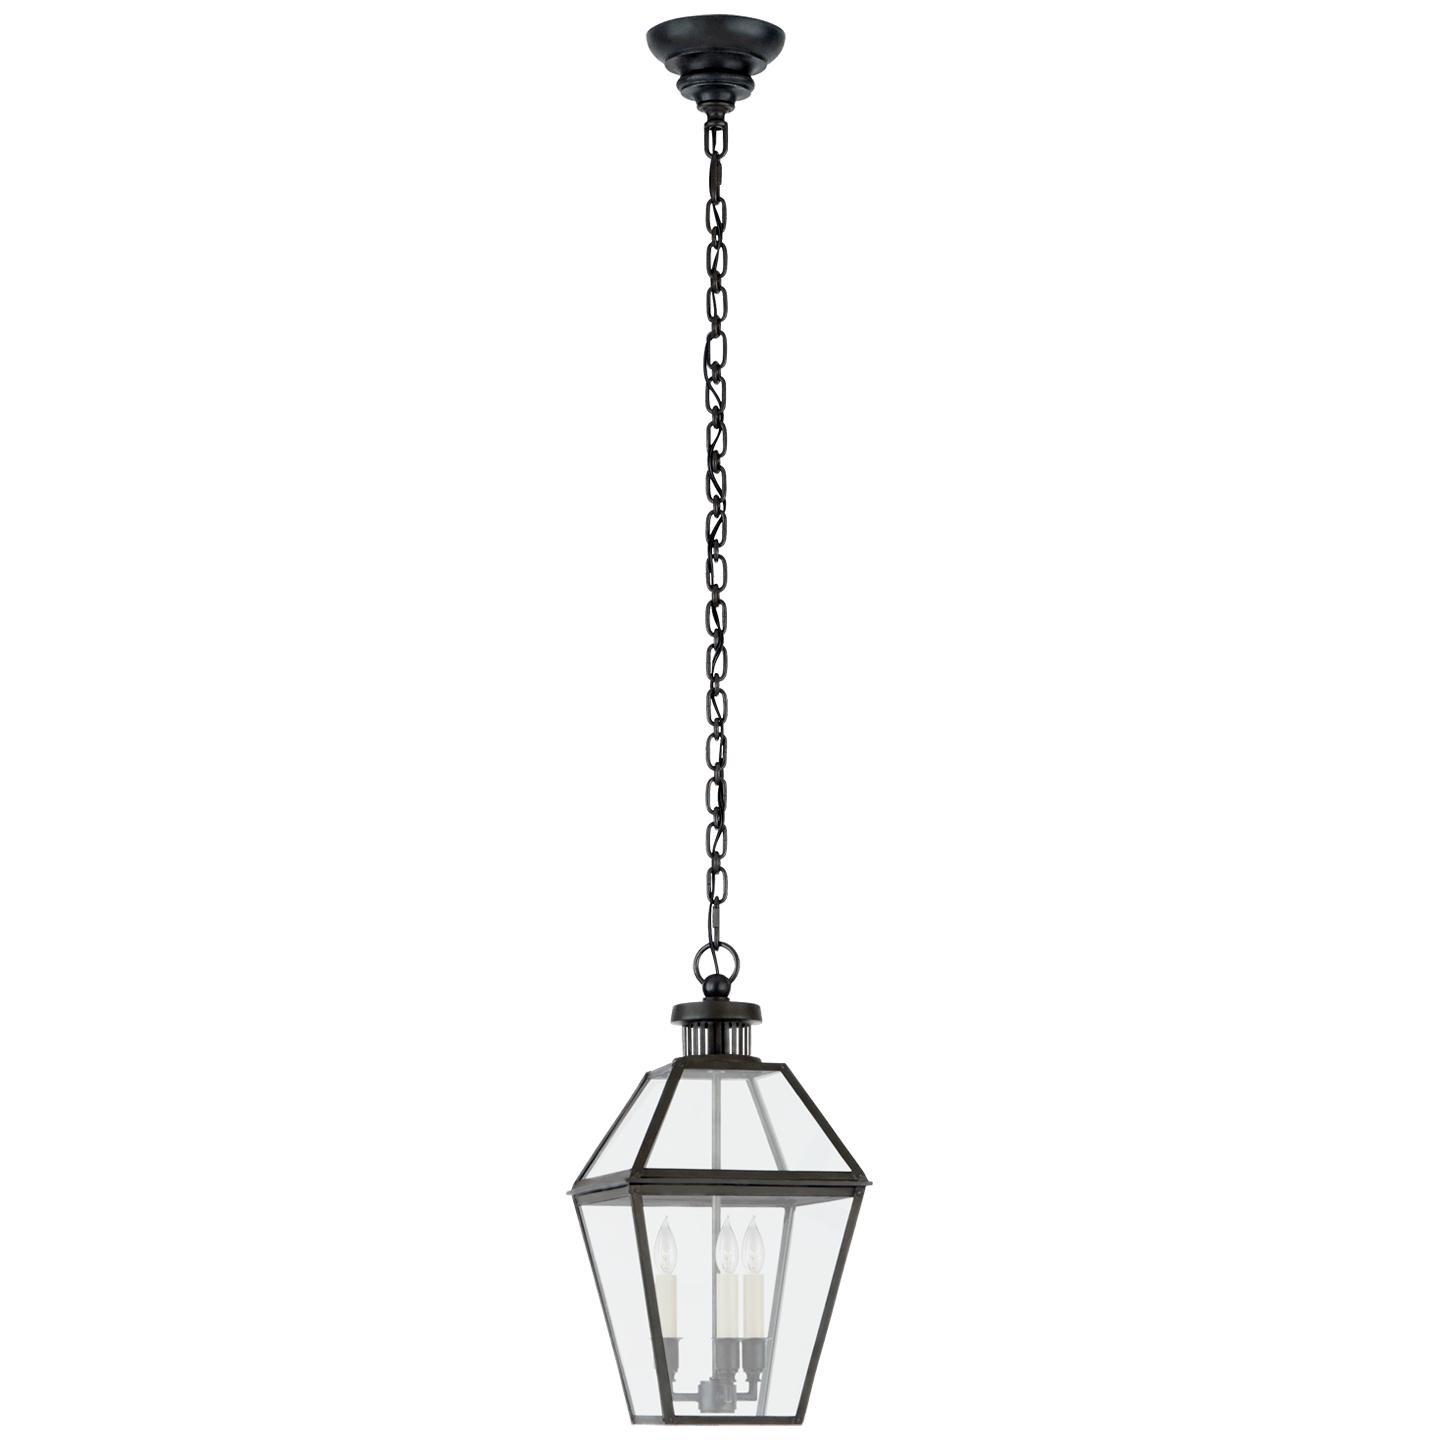 Купить Подвесной светильник Stratford Small Hanging Lantern в интернет-магазине roooms.ru